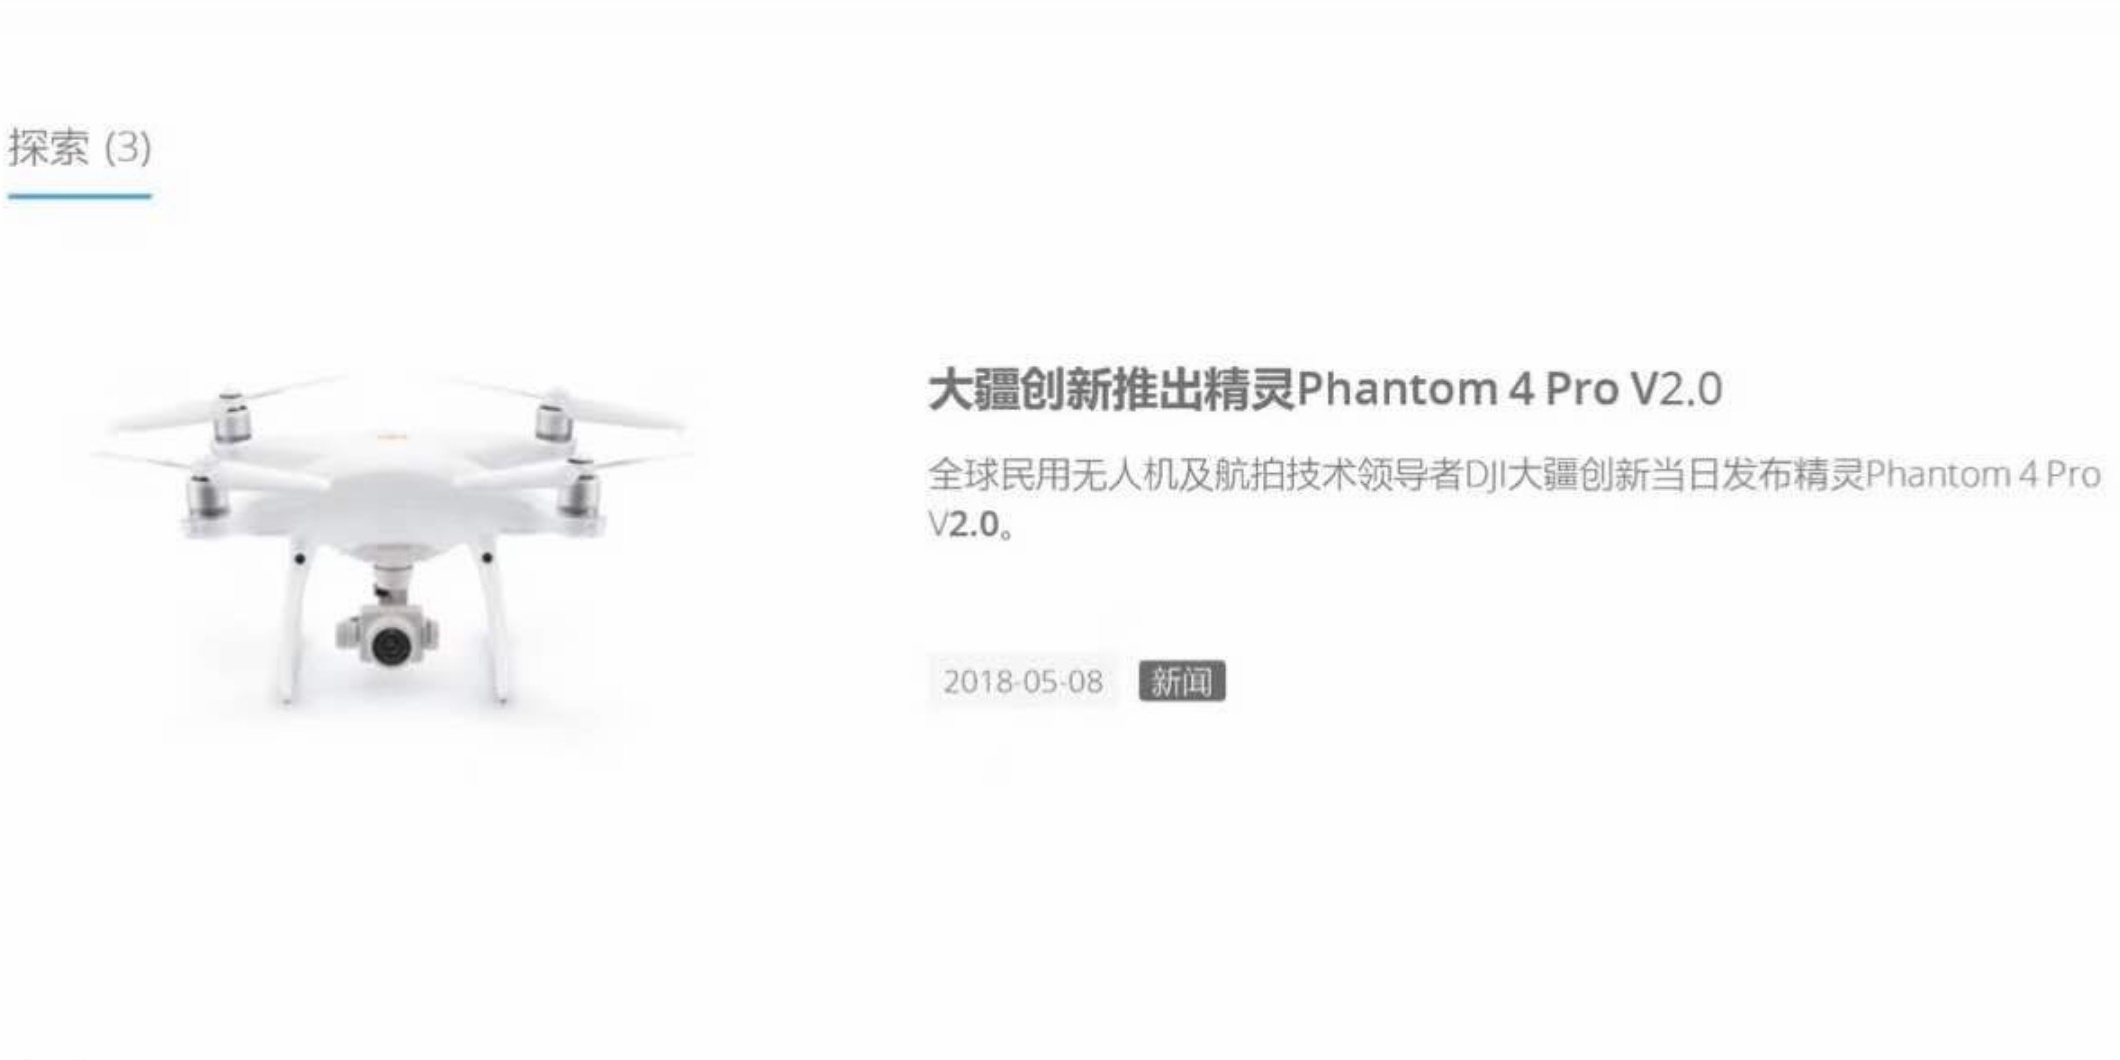 Phantom 4 Pro V2.0 - DJI